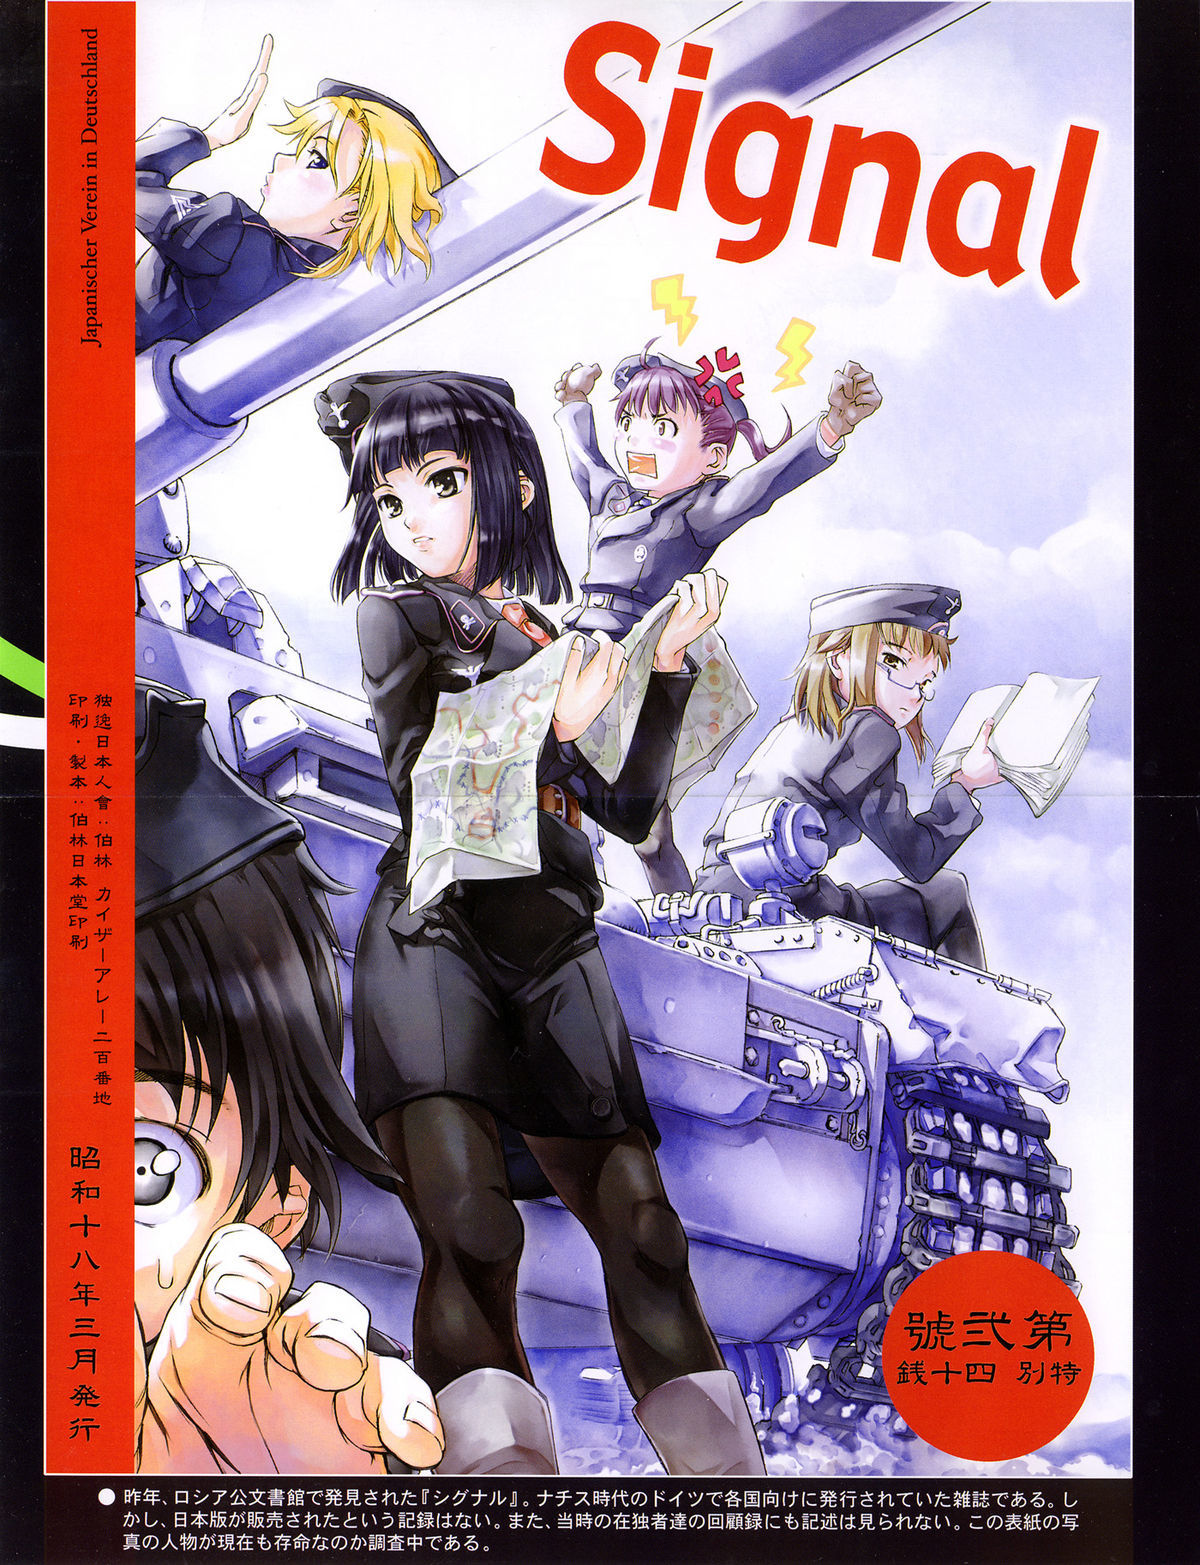 Mitsumei a.k.a. I-404 26 hentai manga